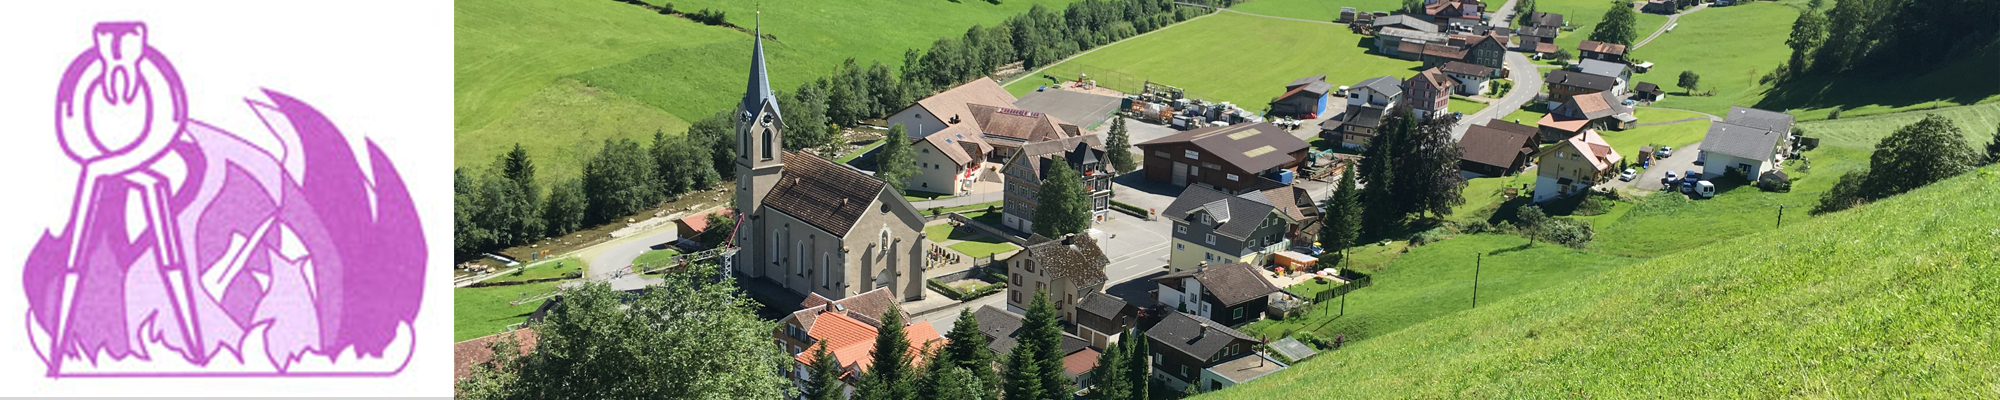 Pfarrei St. Apollonia, Alpthal